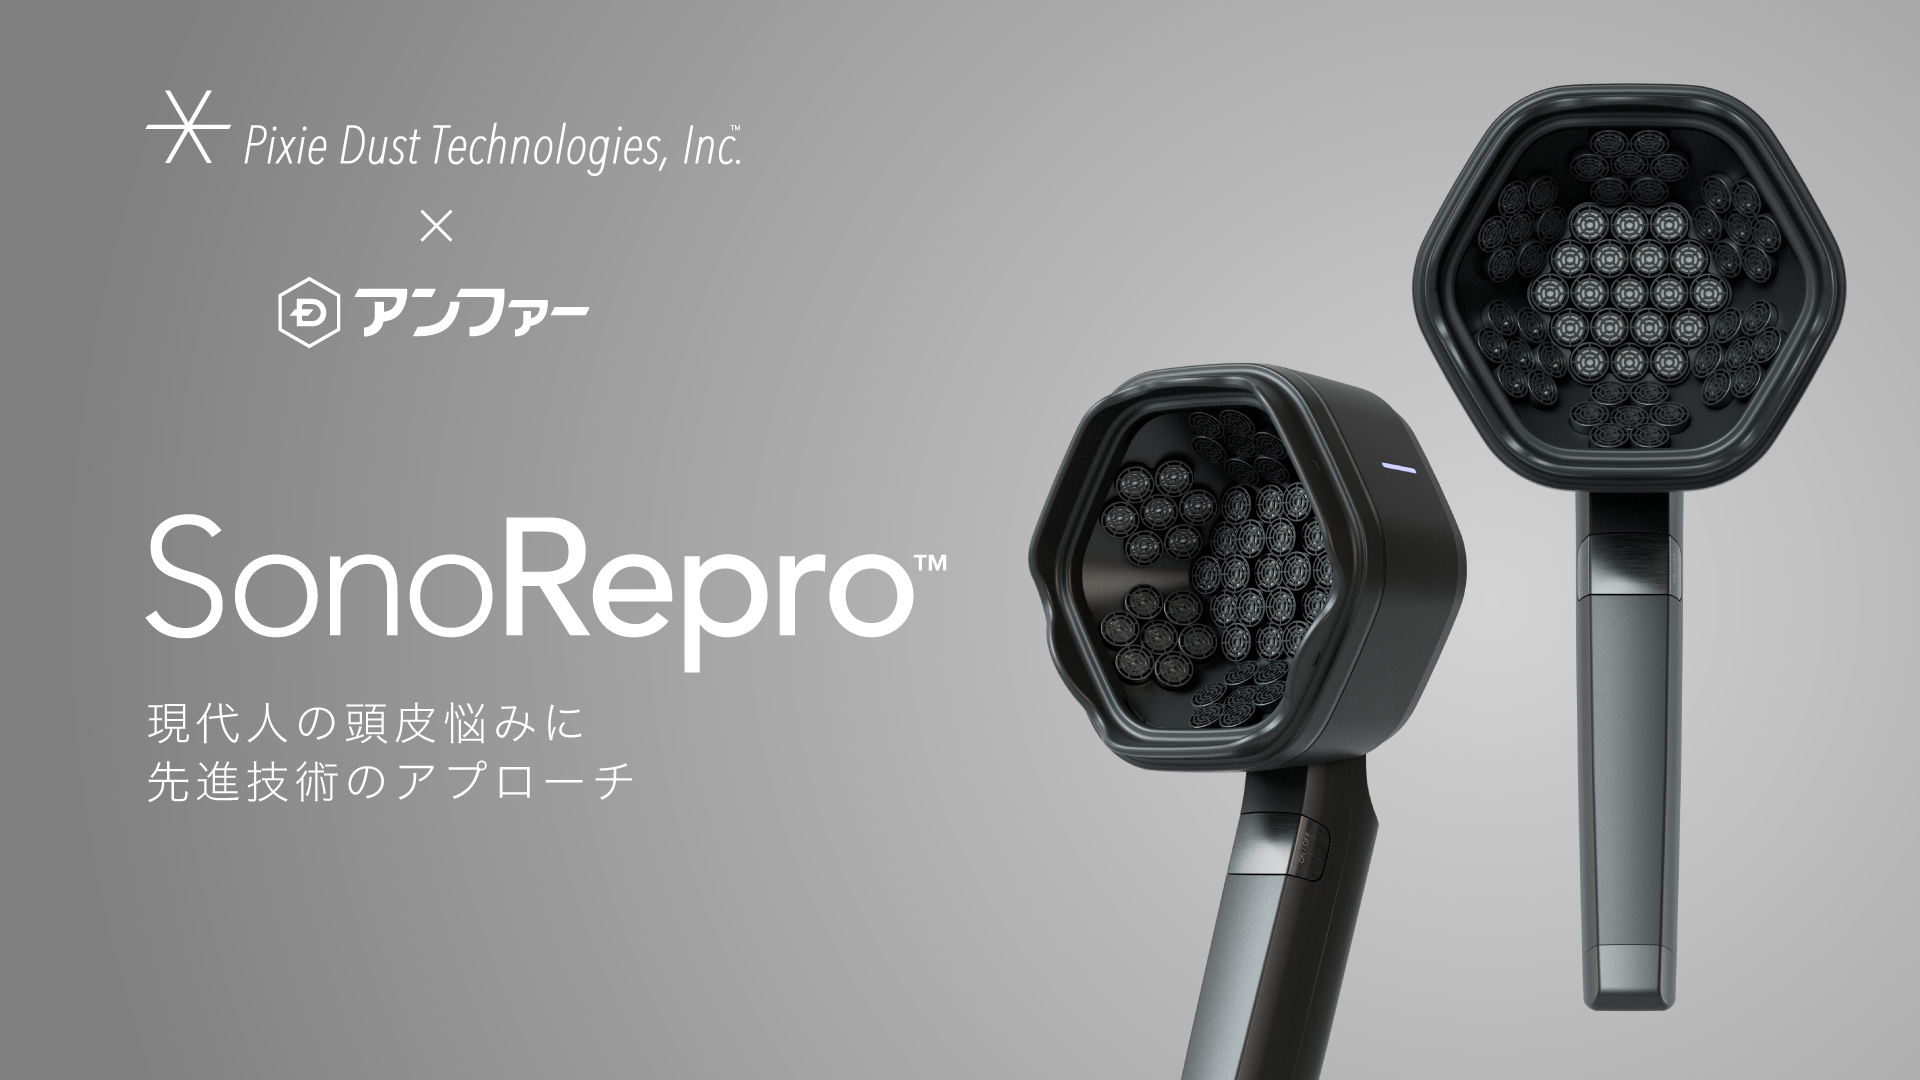 落合陽一氏率いるピクシーダストテクノロジーズと 共同開発した超音波ヘアケアデバイス「SonoRepro™」の 先行販売をMakuakeにて7月1日より開始 ～1日1分の新しいヘアケア習慣～